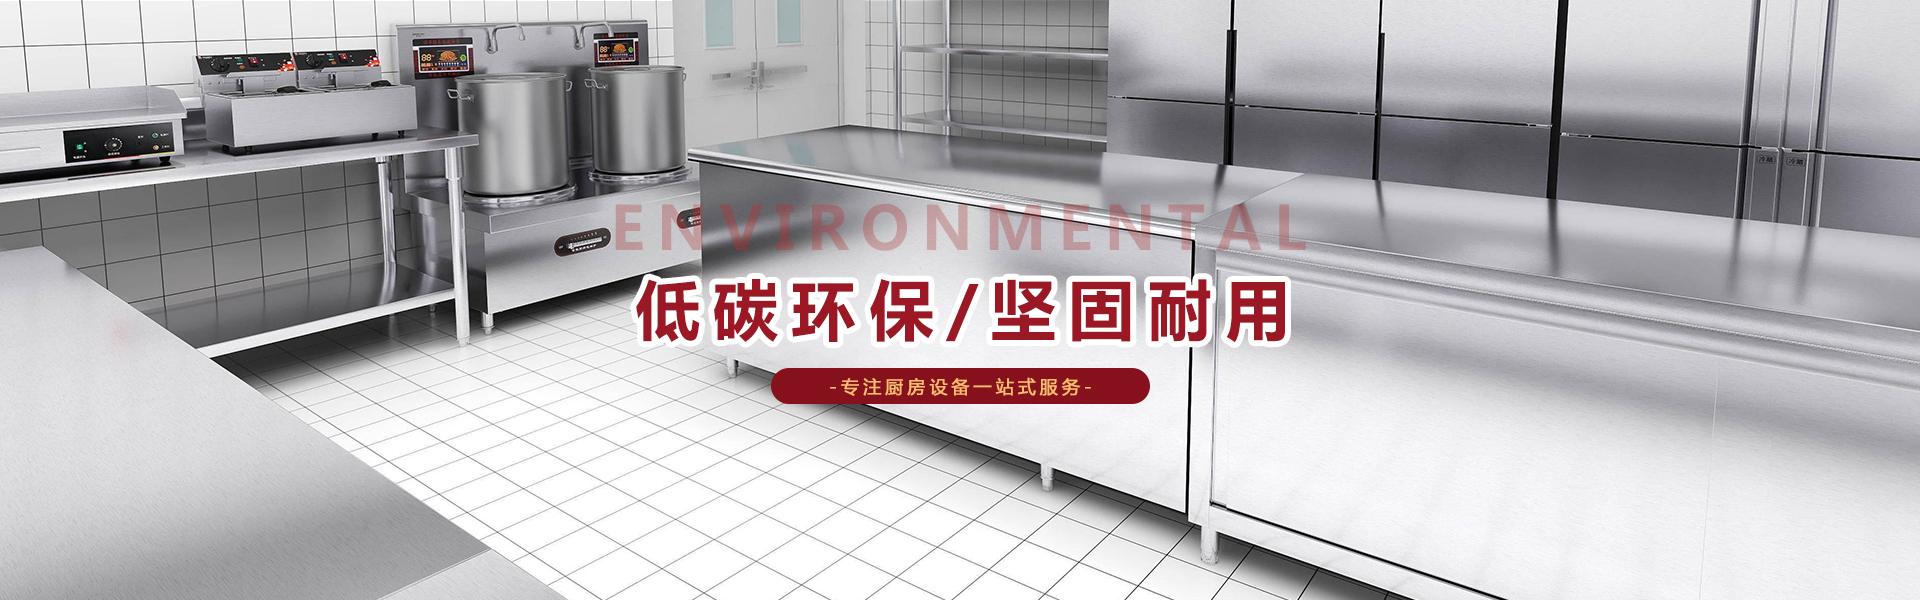 重庆厨房设备公司百年厨房工程